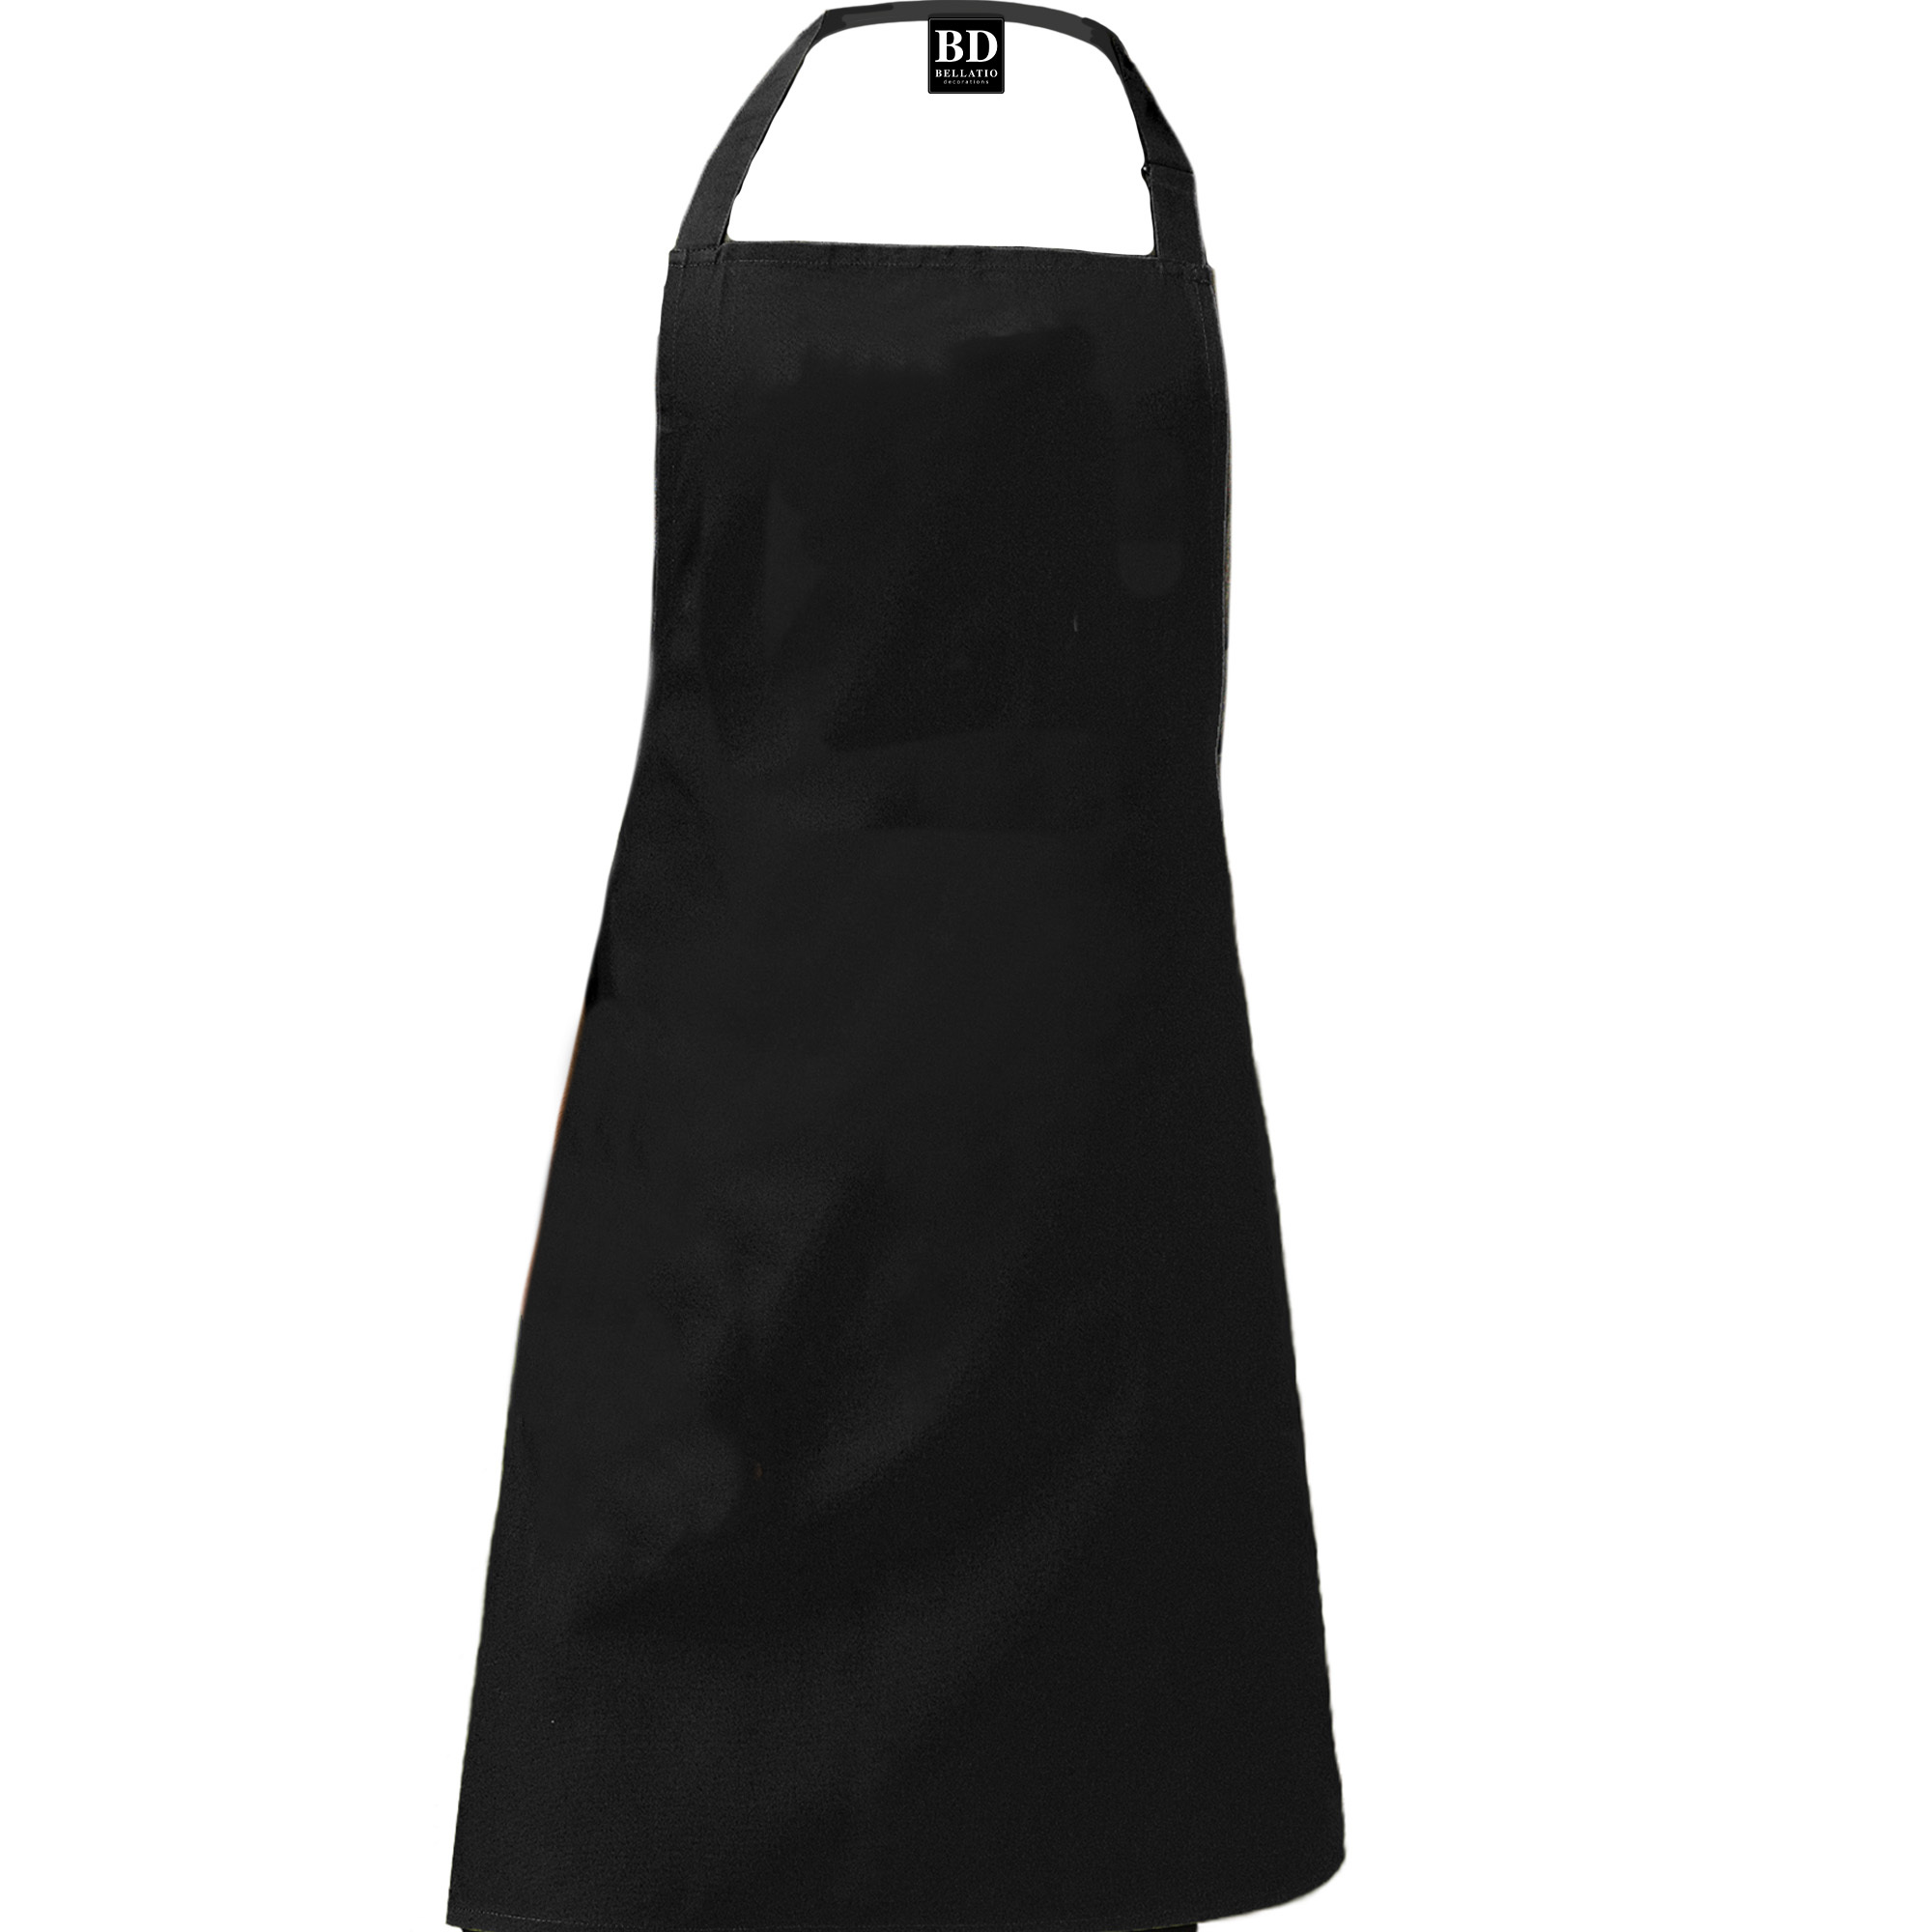 Queen of the kitchen Bonnie keukenschort/ barbecue schort zwart voor dames